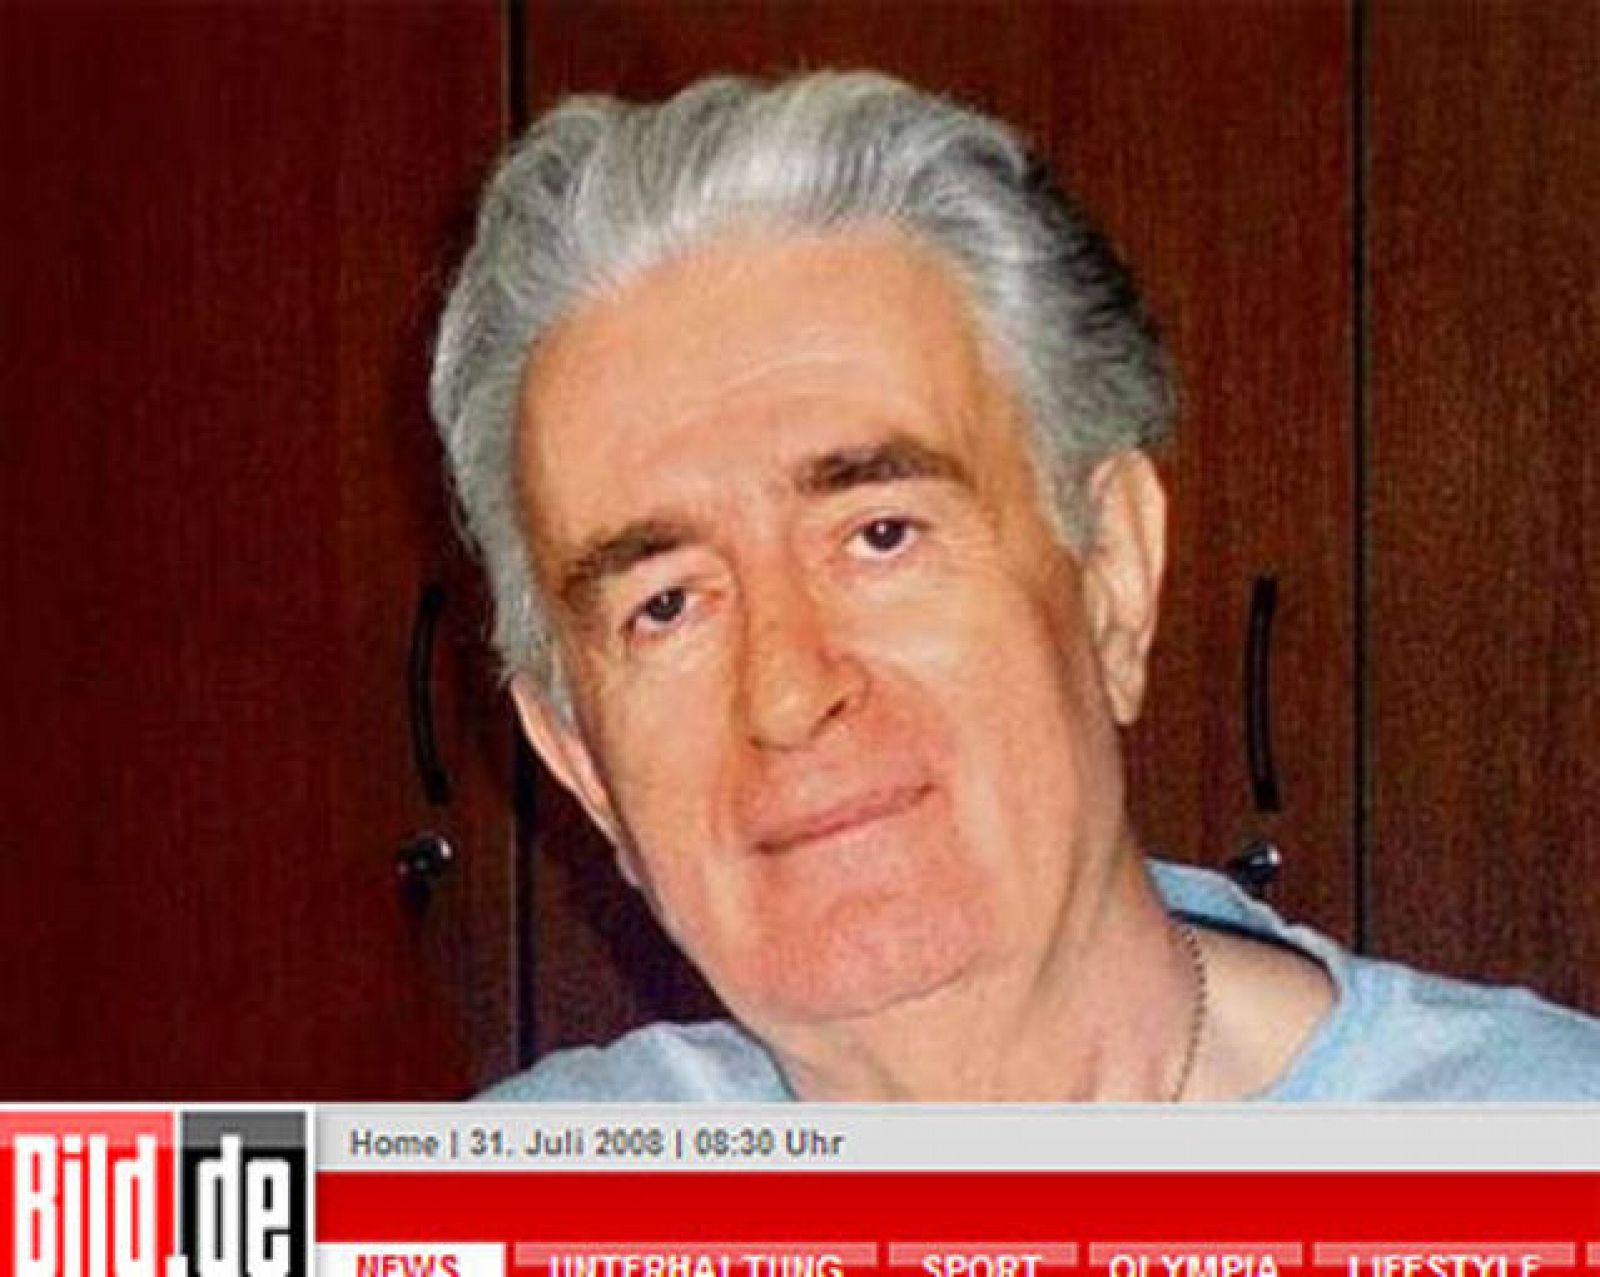 Varios medios europeos han difundido una foto con el verdadero aspecto del ex líder serbobosnio Radovan Karadzic.